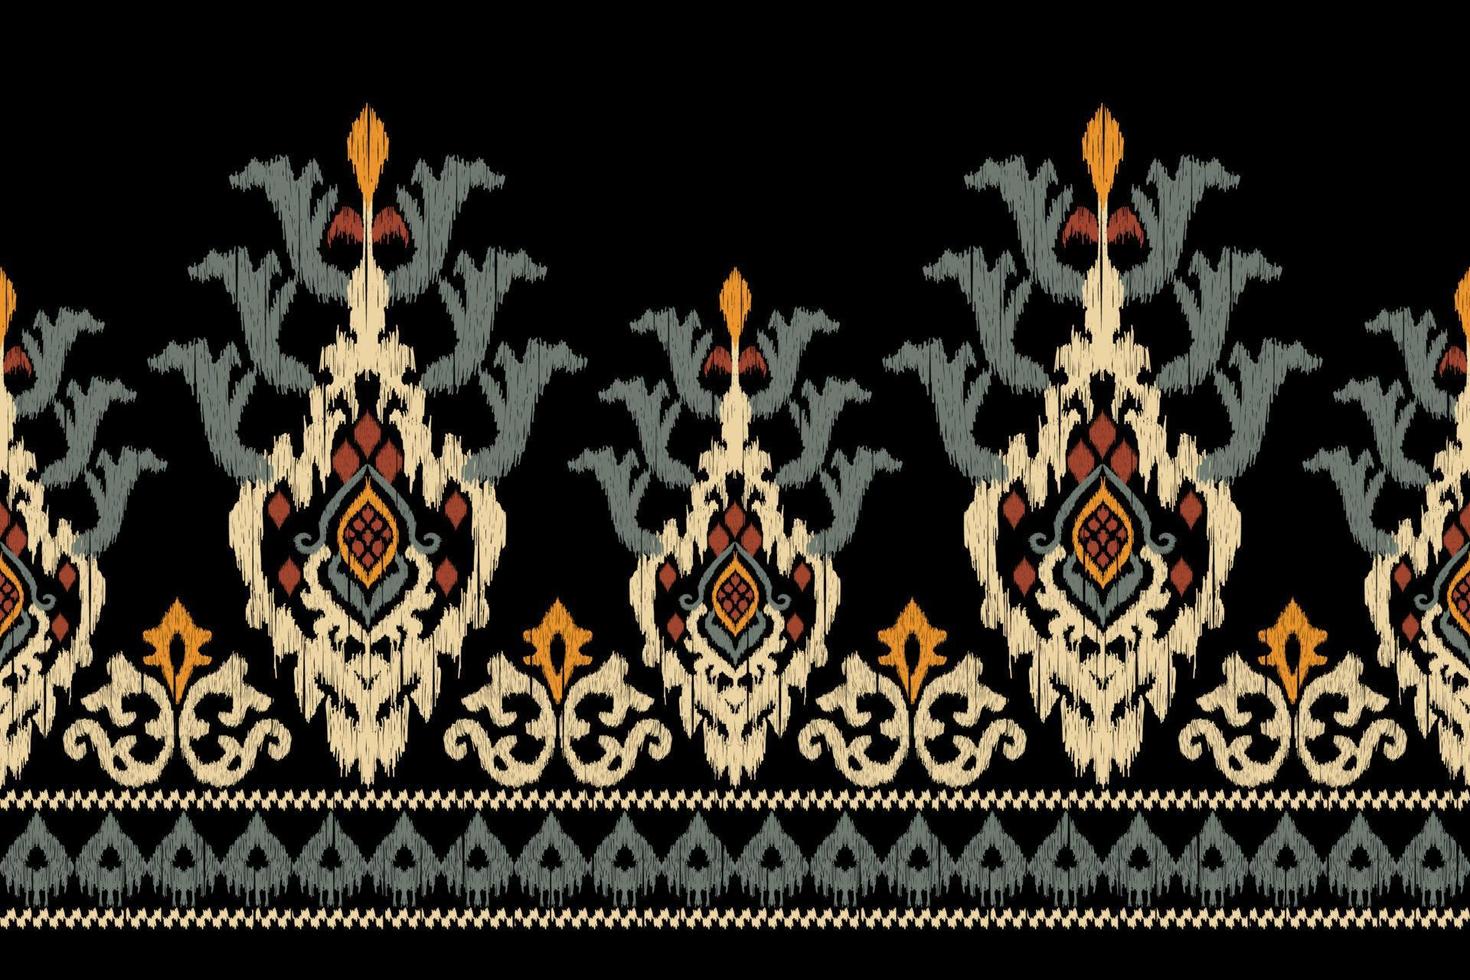 ikat floral paisley bordado em preto background.geometric étnica oriental padrão tradicional. asteca estilo abstrato vector illustration.design para textura, tecido, roupas, embrulho, decoração, sarongue.